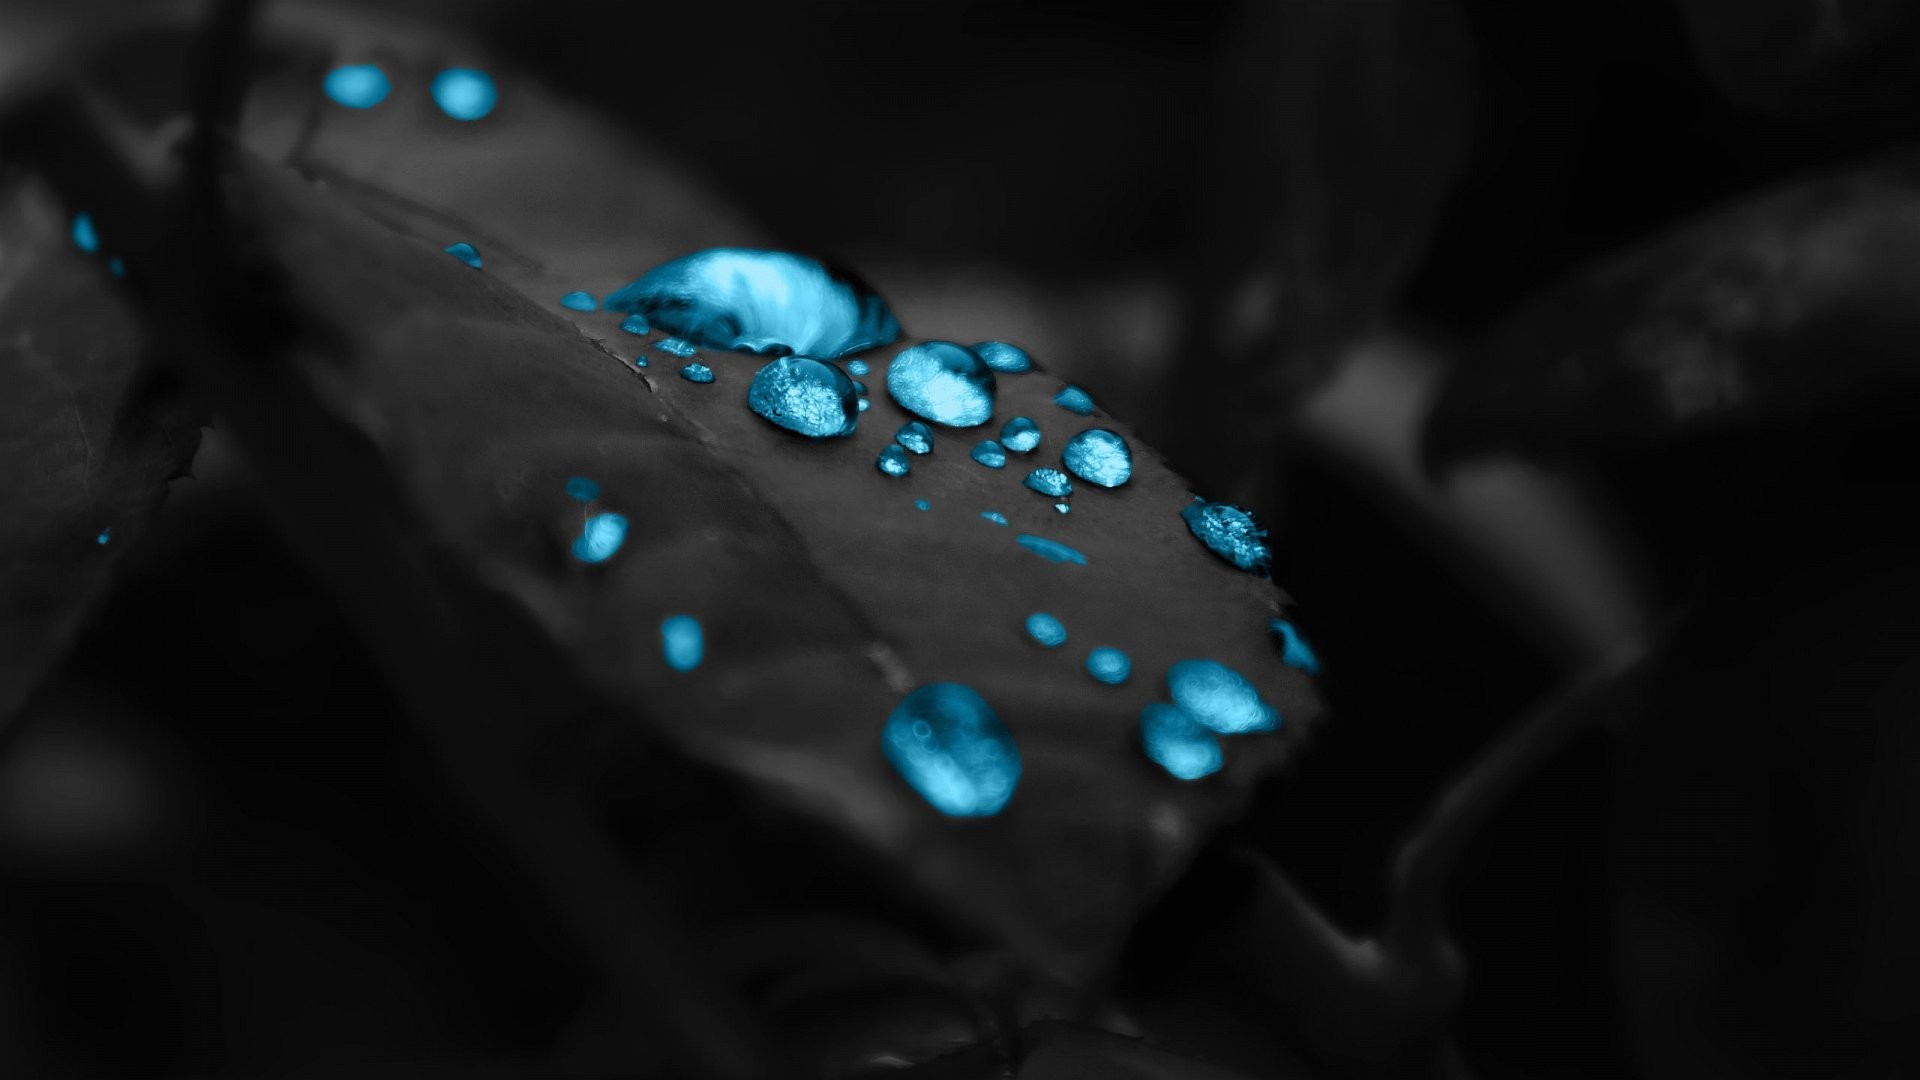 1920x1080 Wallpaper blue drops in a black leaf 1920 x 1080 full hd